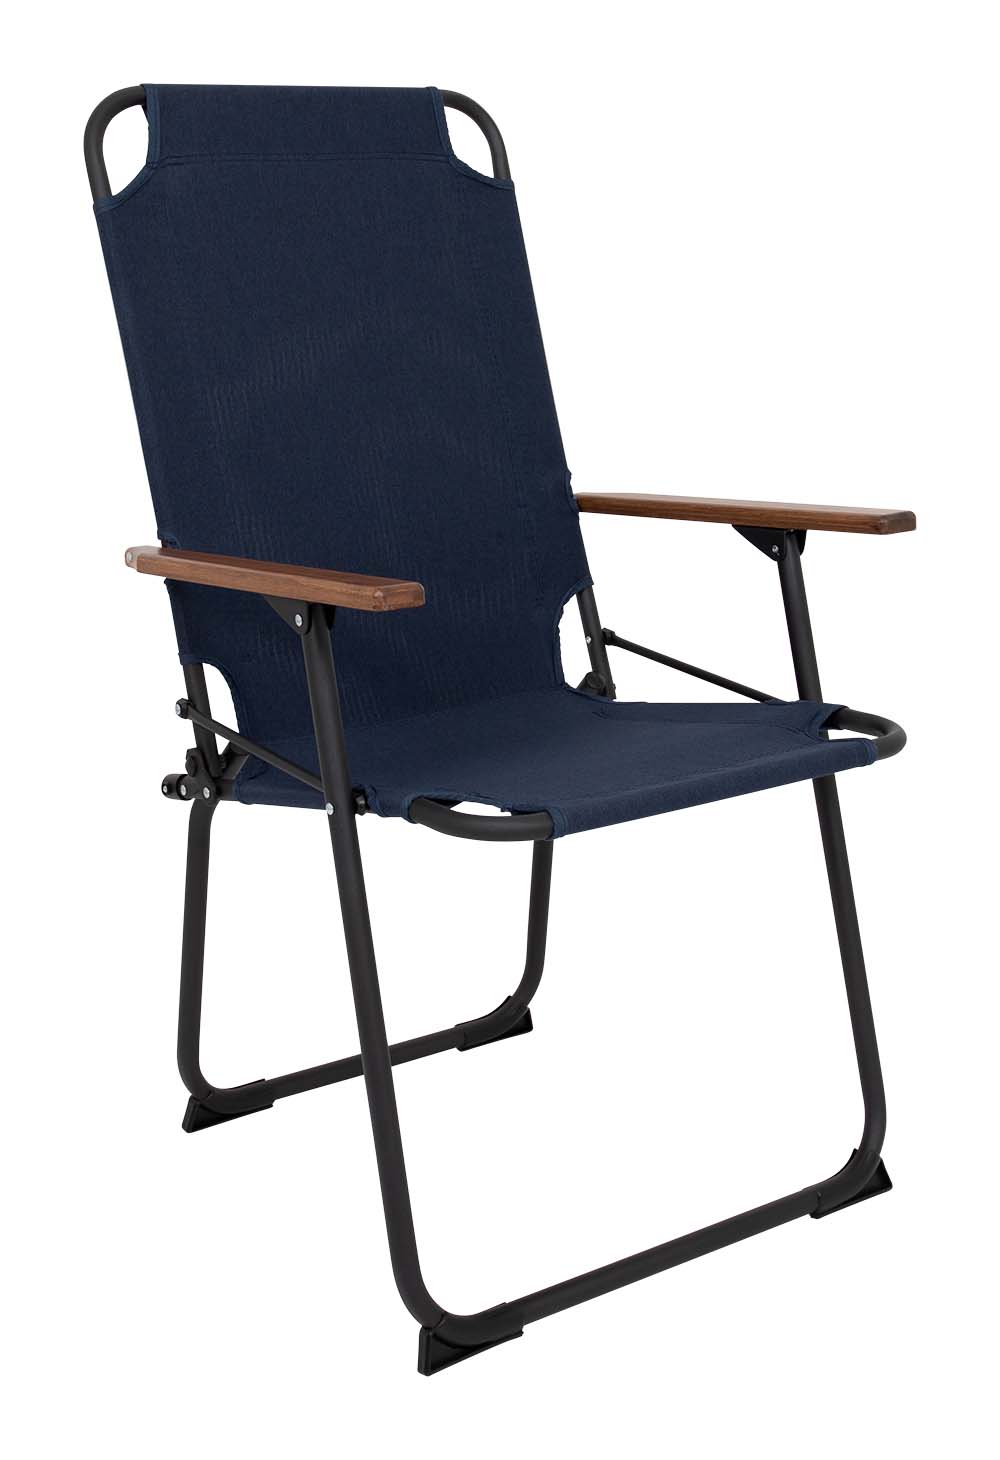 1211894 "Een extra hoge en brede comfortabele klapstoel. Een klassieke en zeer compacte klapstoel met een moderne industriële uitstraling. Een stoel waarbij stijl, comfort en functionaliteit worden gecombineerd. Voorzien van een Cationic bekleding, een lichtgewicht aluminium frame en bamboe armleggers. Een ideale stoel voor in de tuin of op de camping, maar ook op het balkon en in de woonkamer. Daarnaast is deze stoel voorzien van extra stabilisatoren en een 'safety-lock' tegen ongewenst inklappen. Compact mee te nemen."